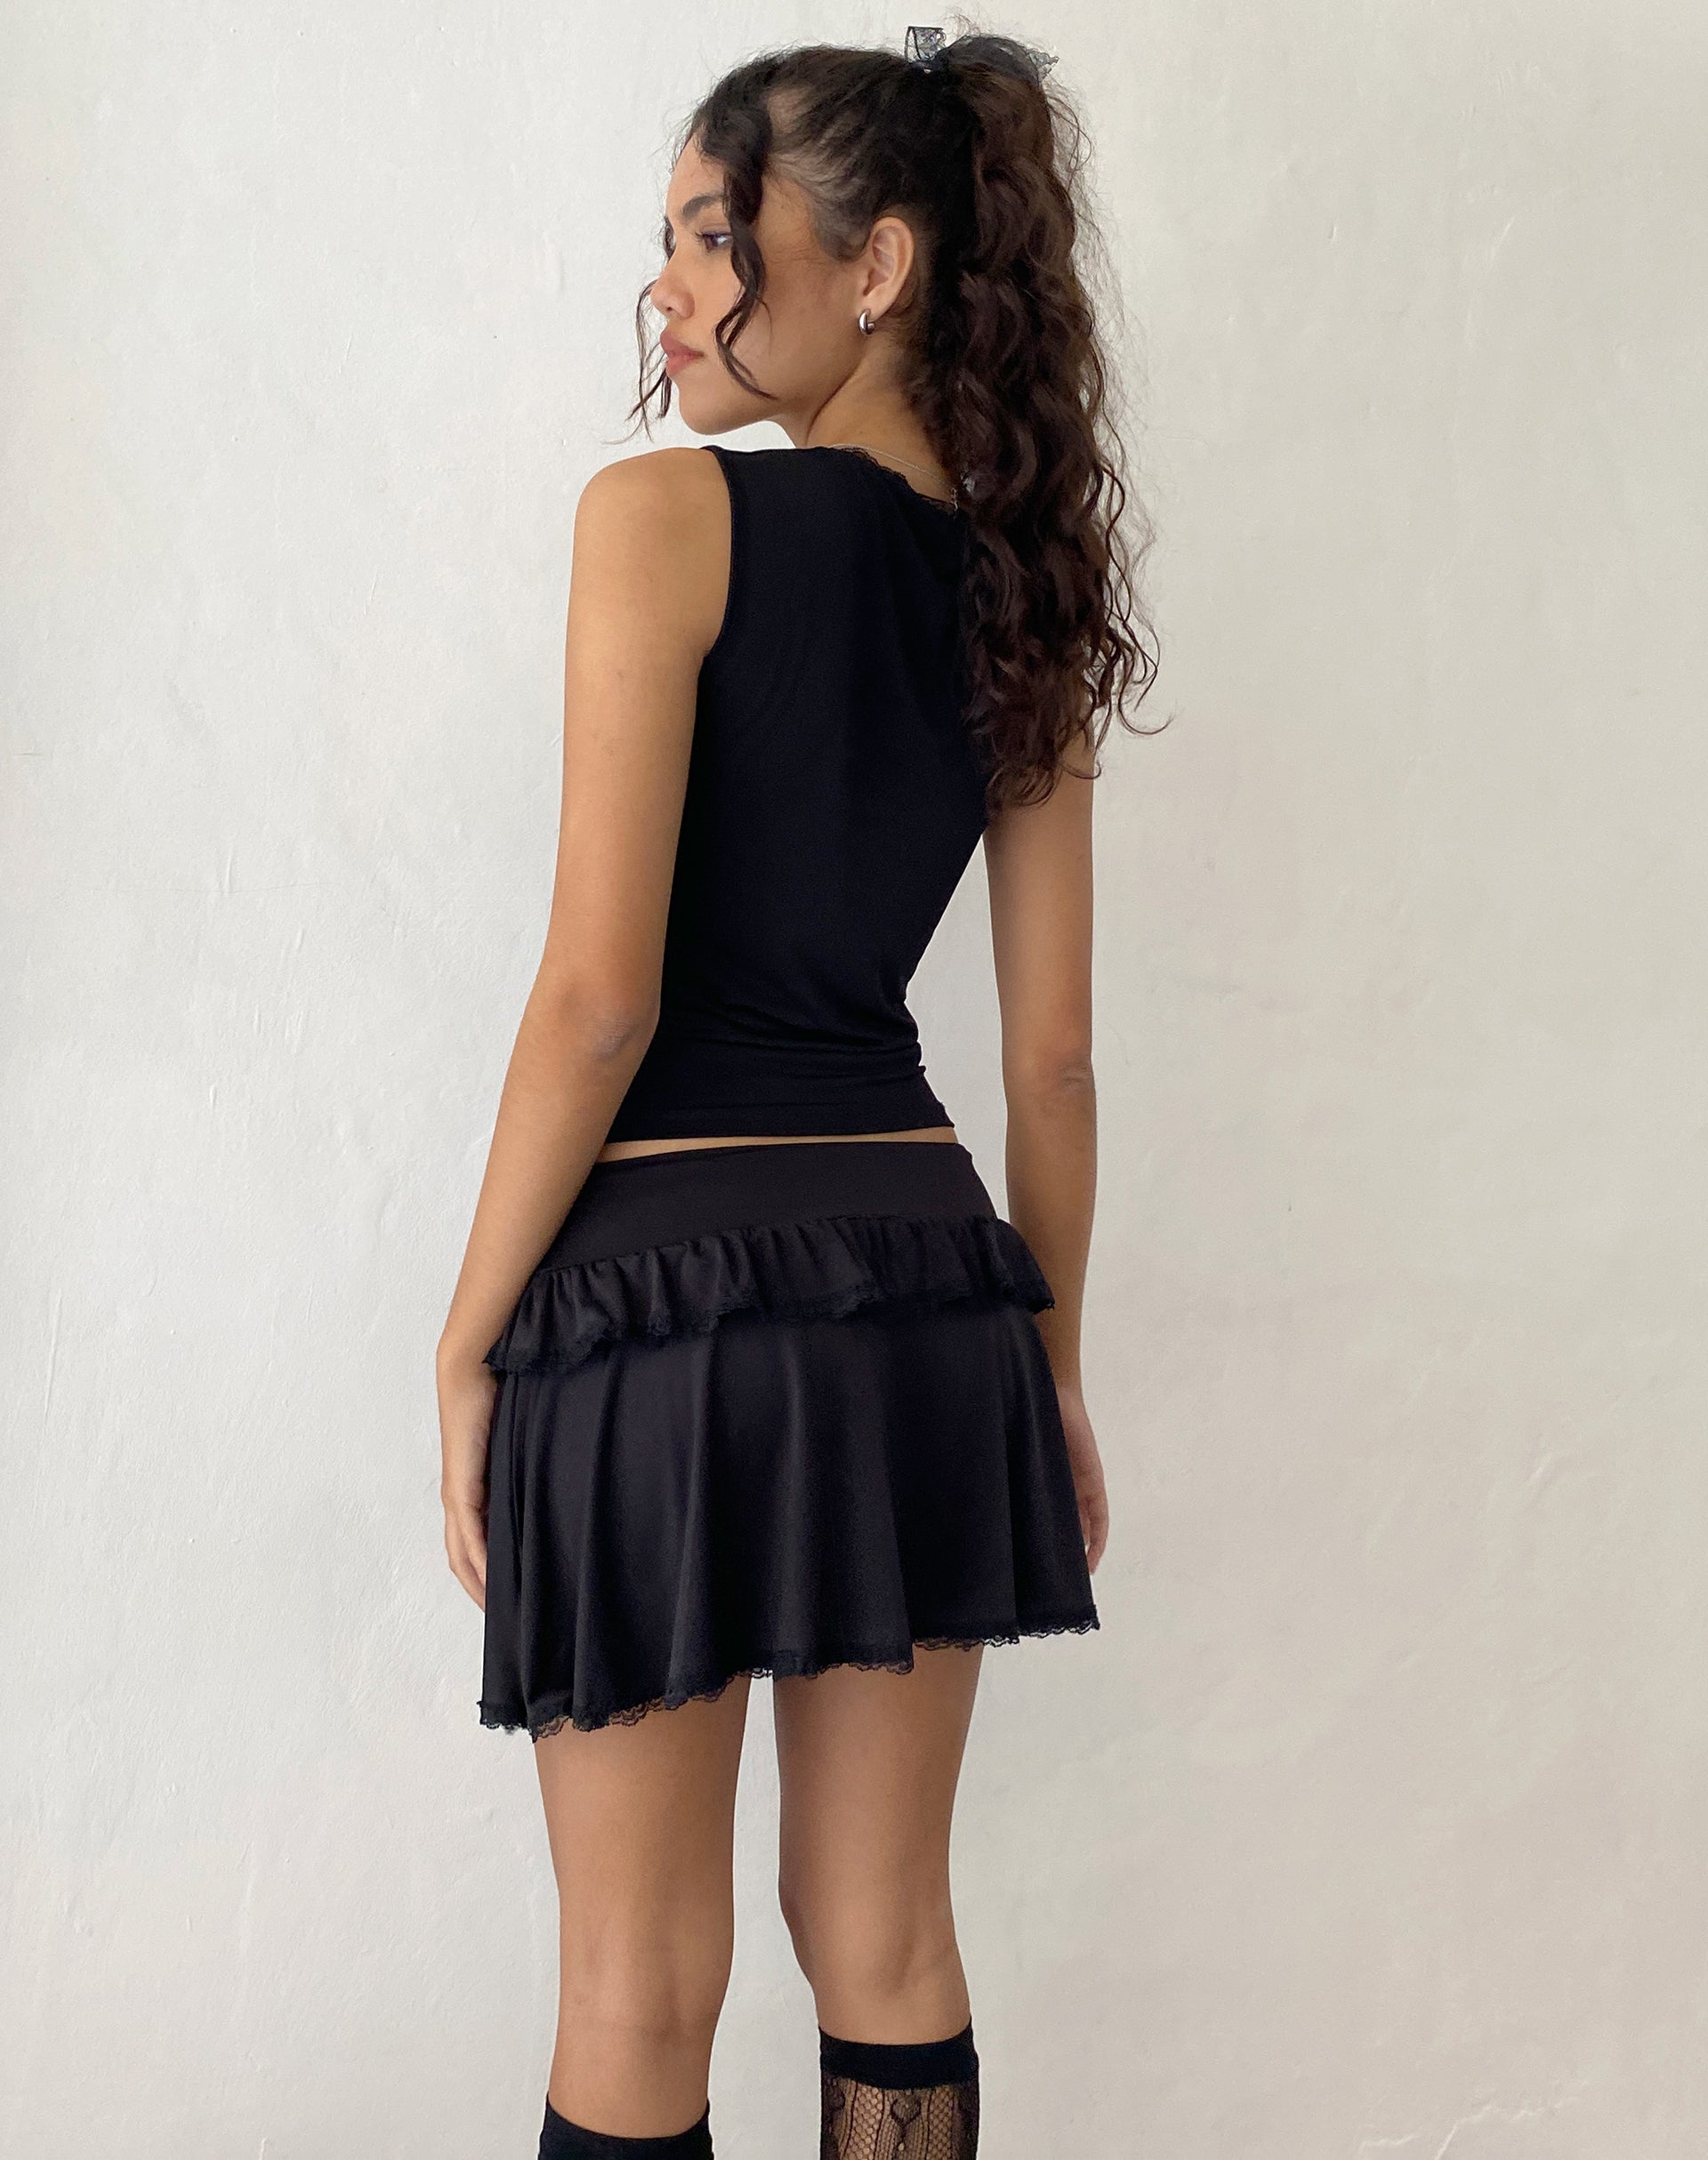 Image de la mini-jupe Addalyn à bordures en dentelle, en noir